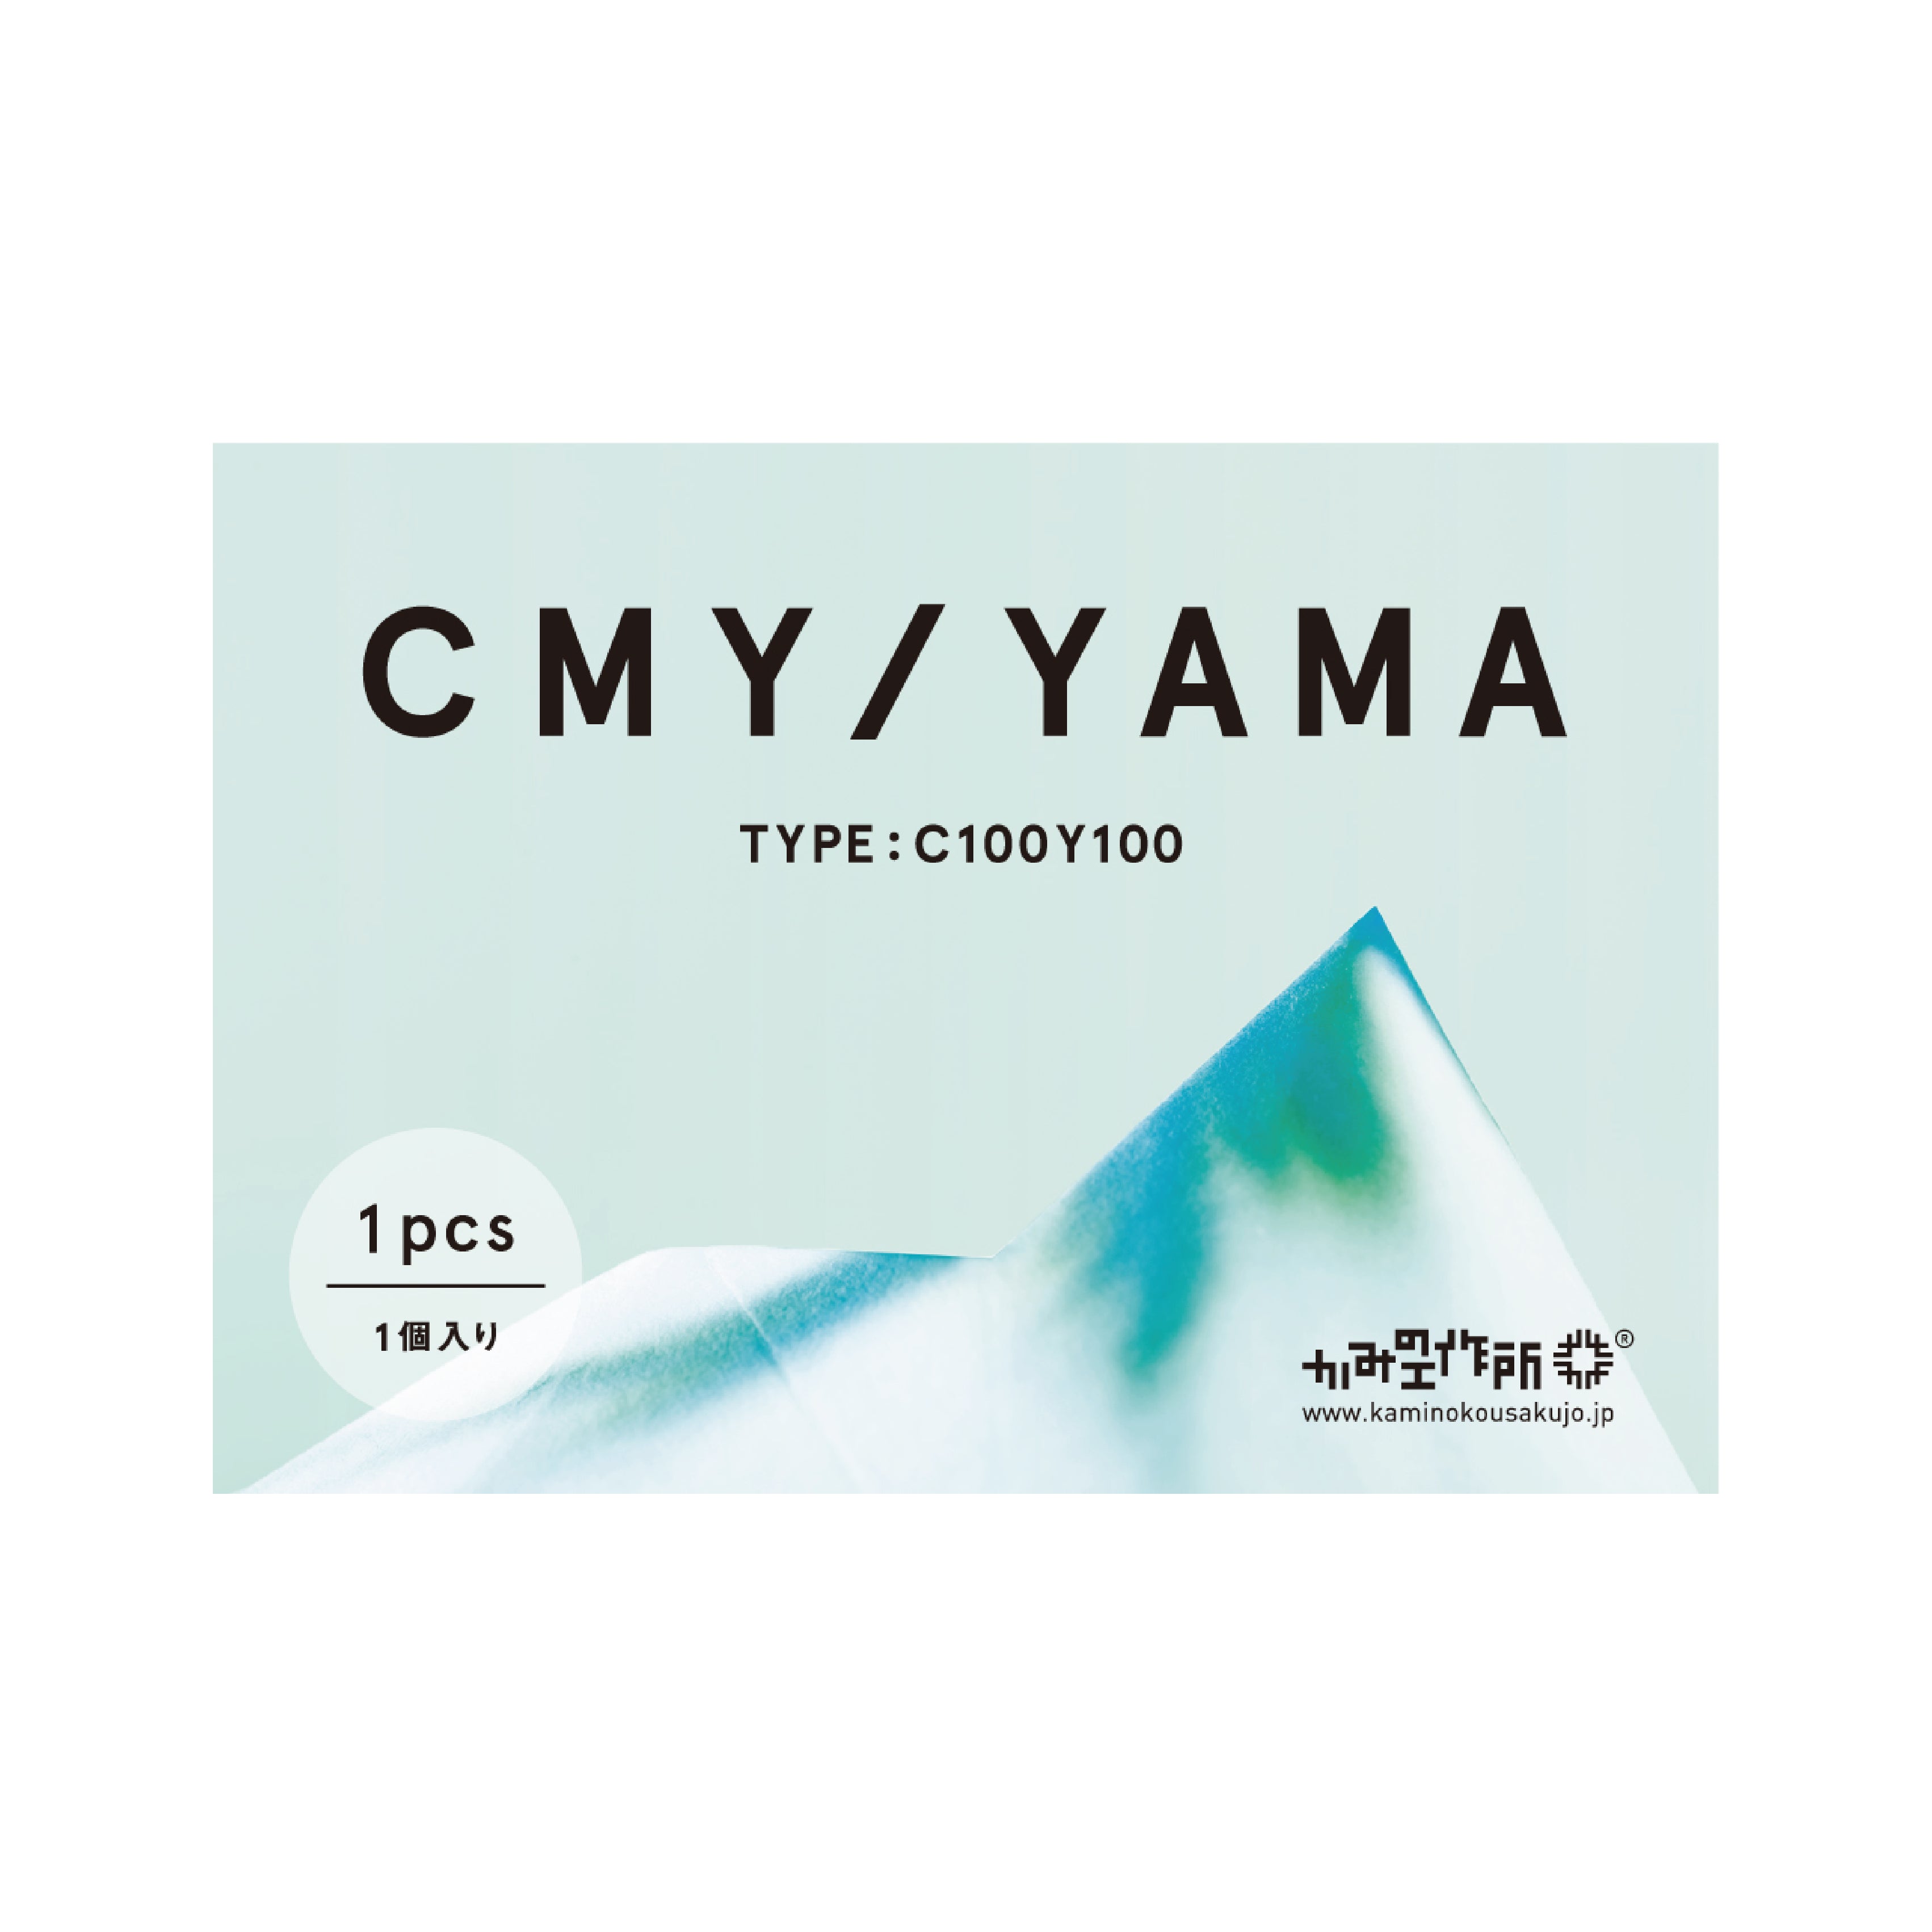 CMY/YAMA